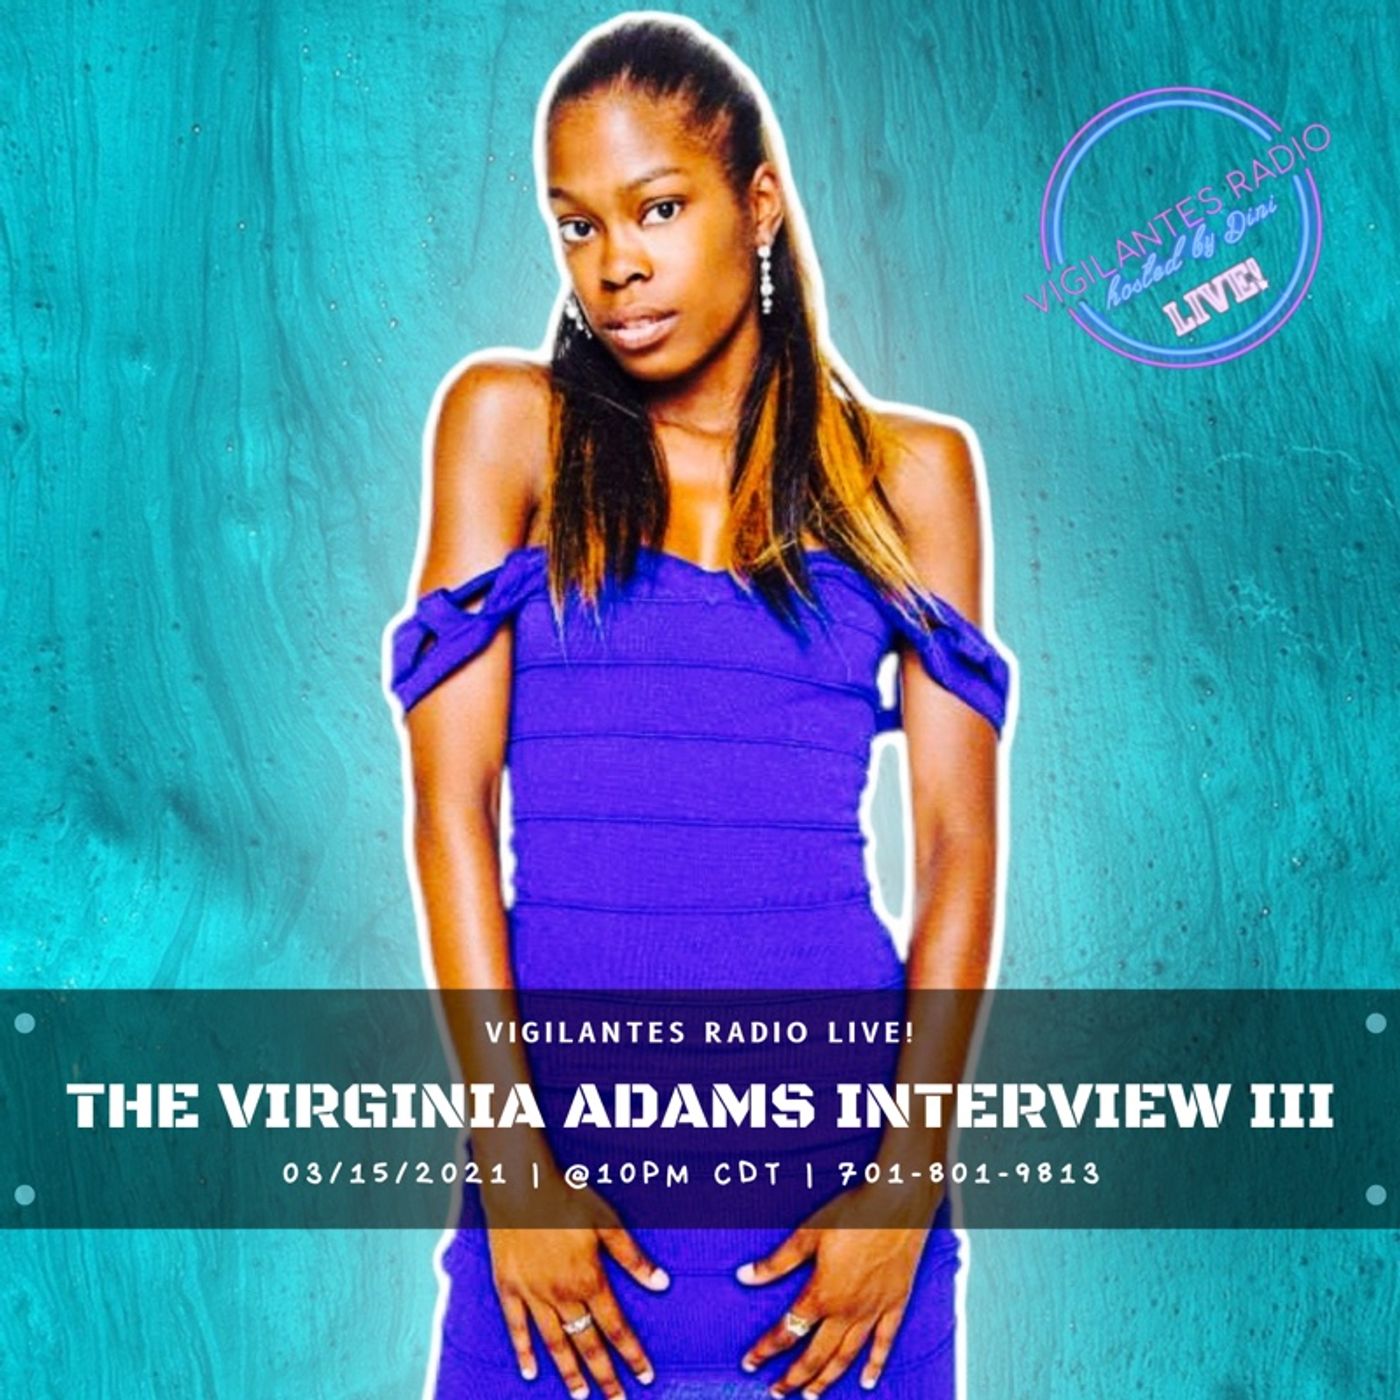 The Virginia Adams Interview III. Image